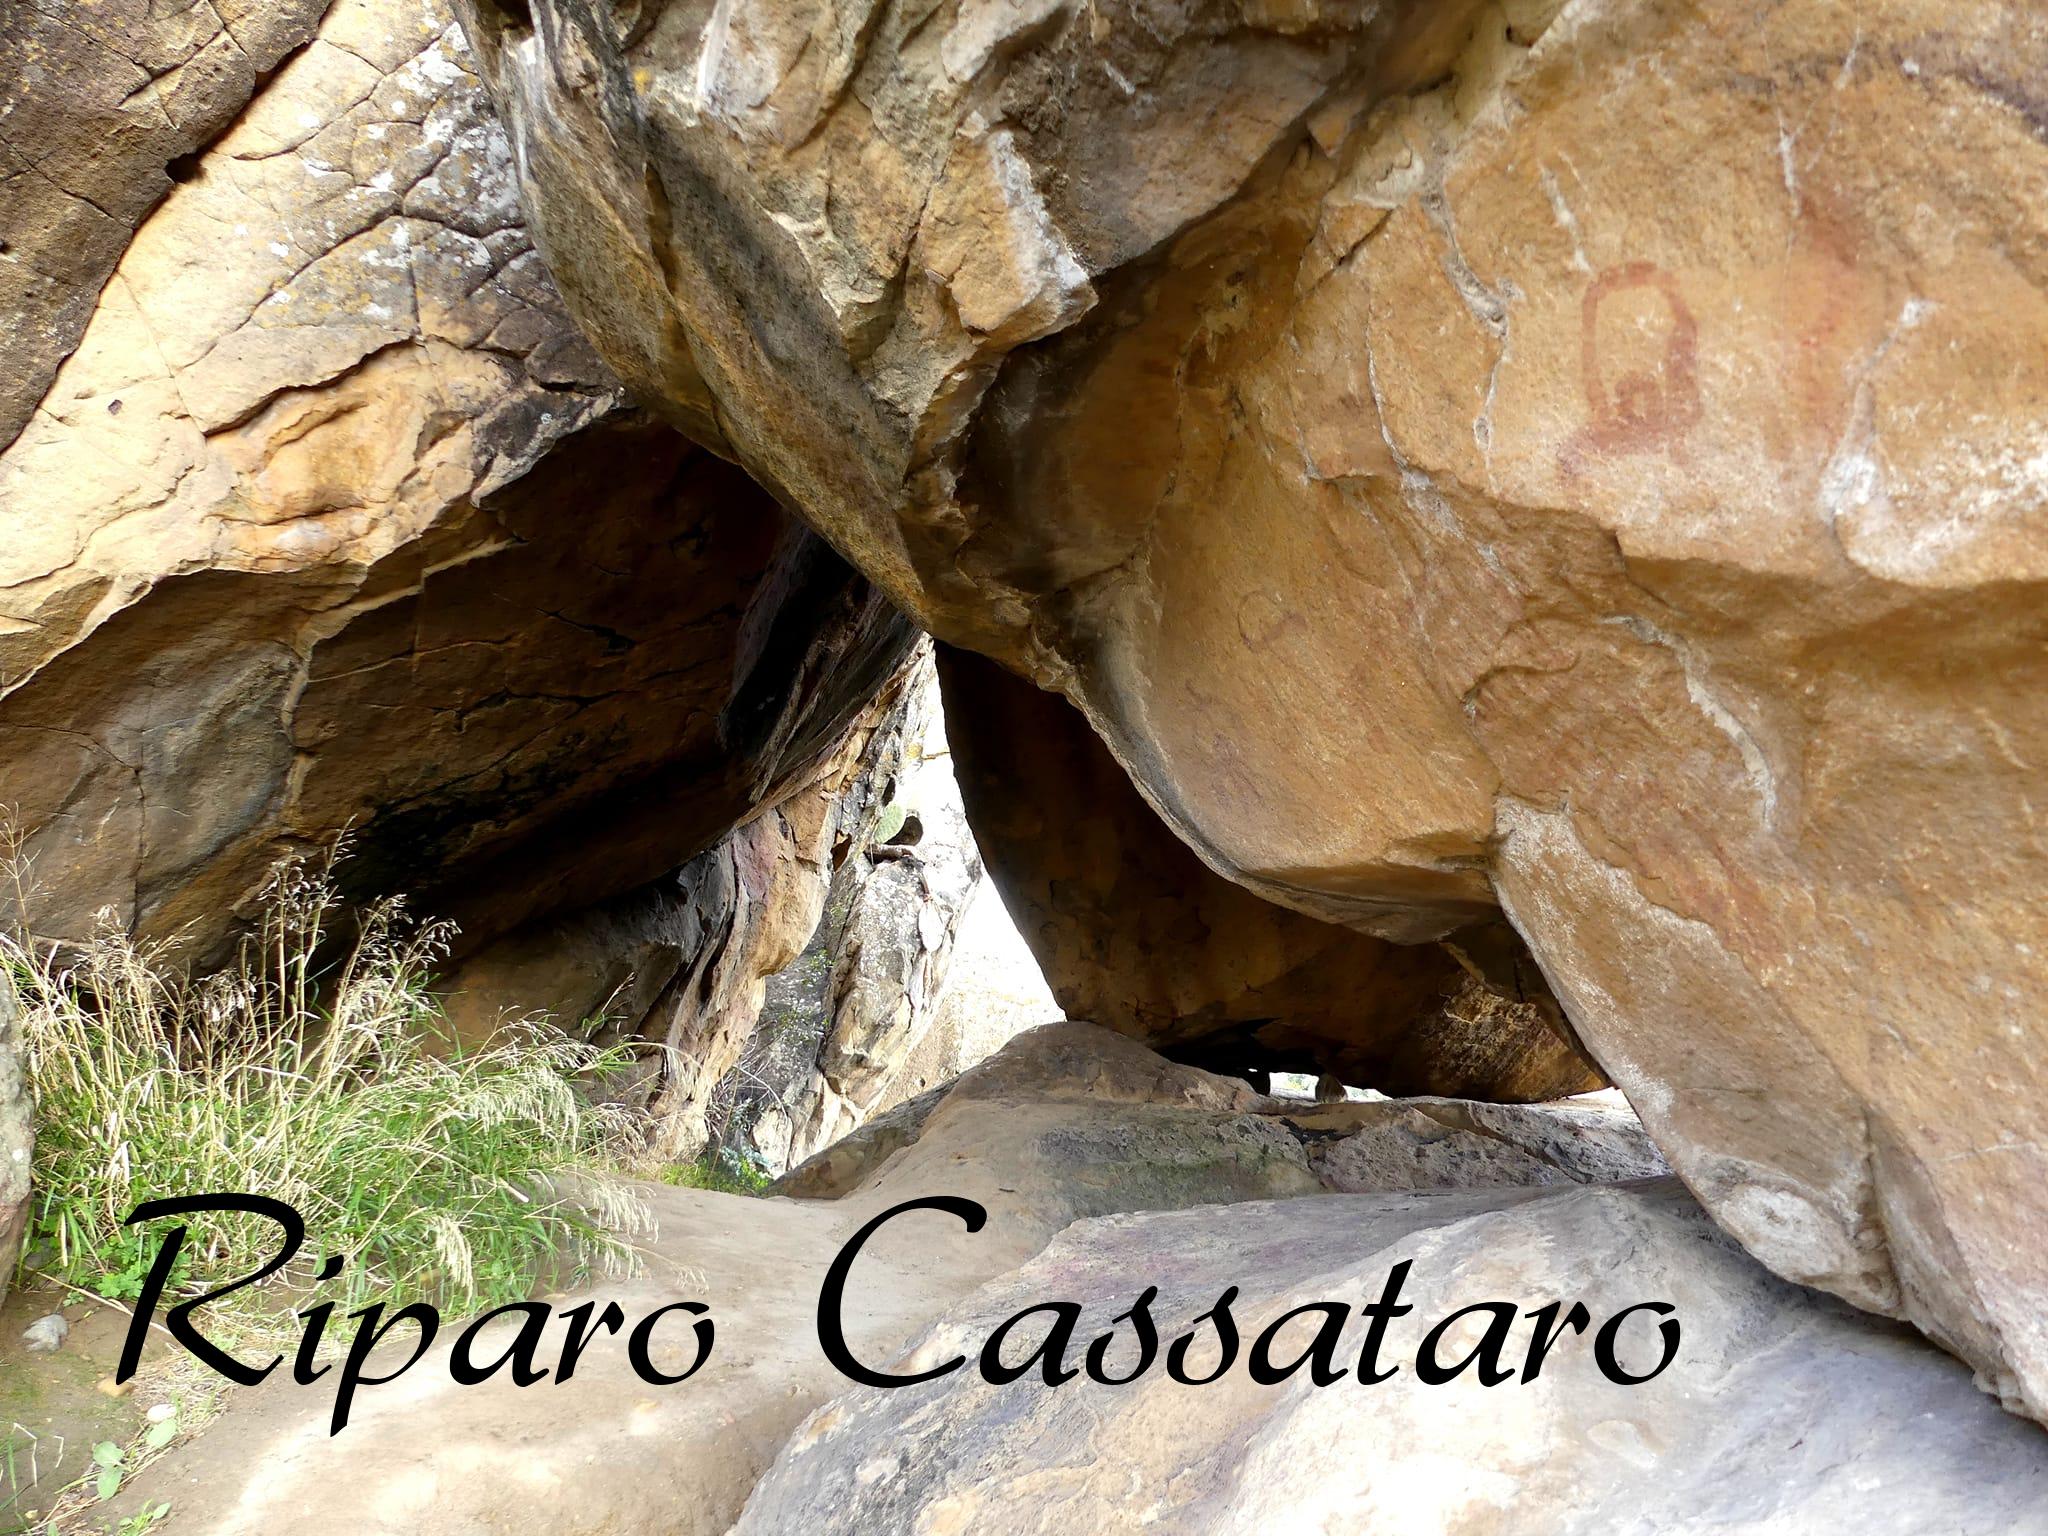 Riparo Cassataro